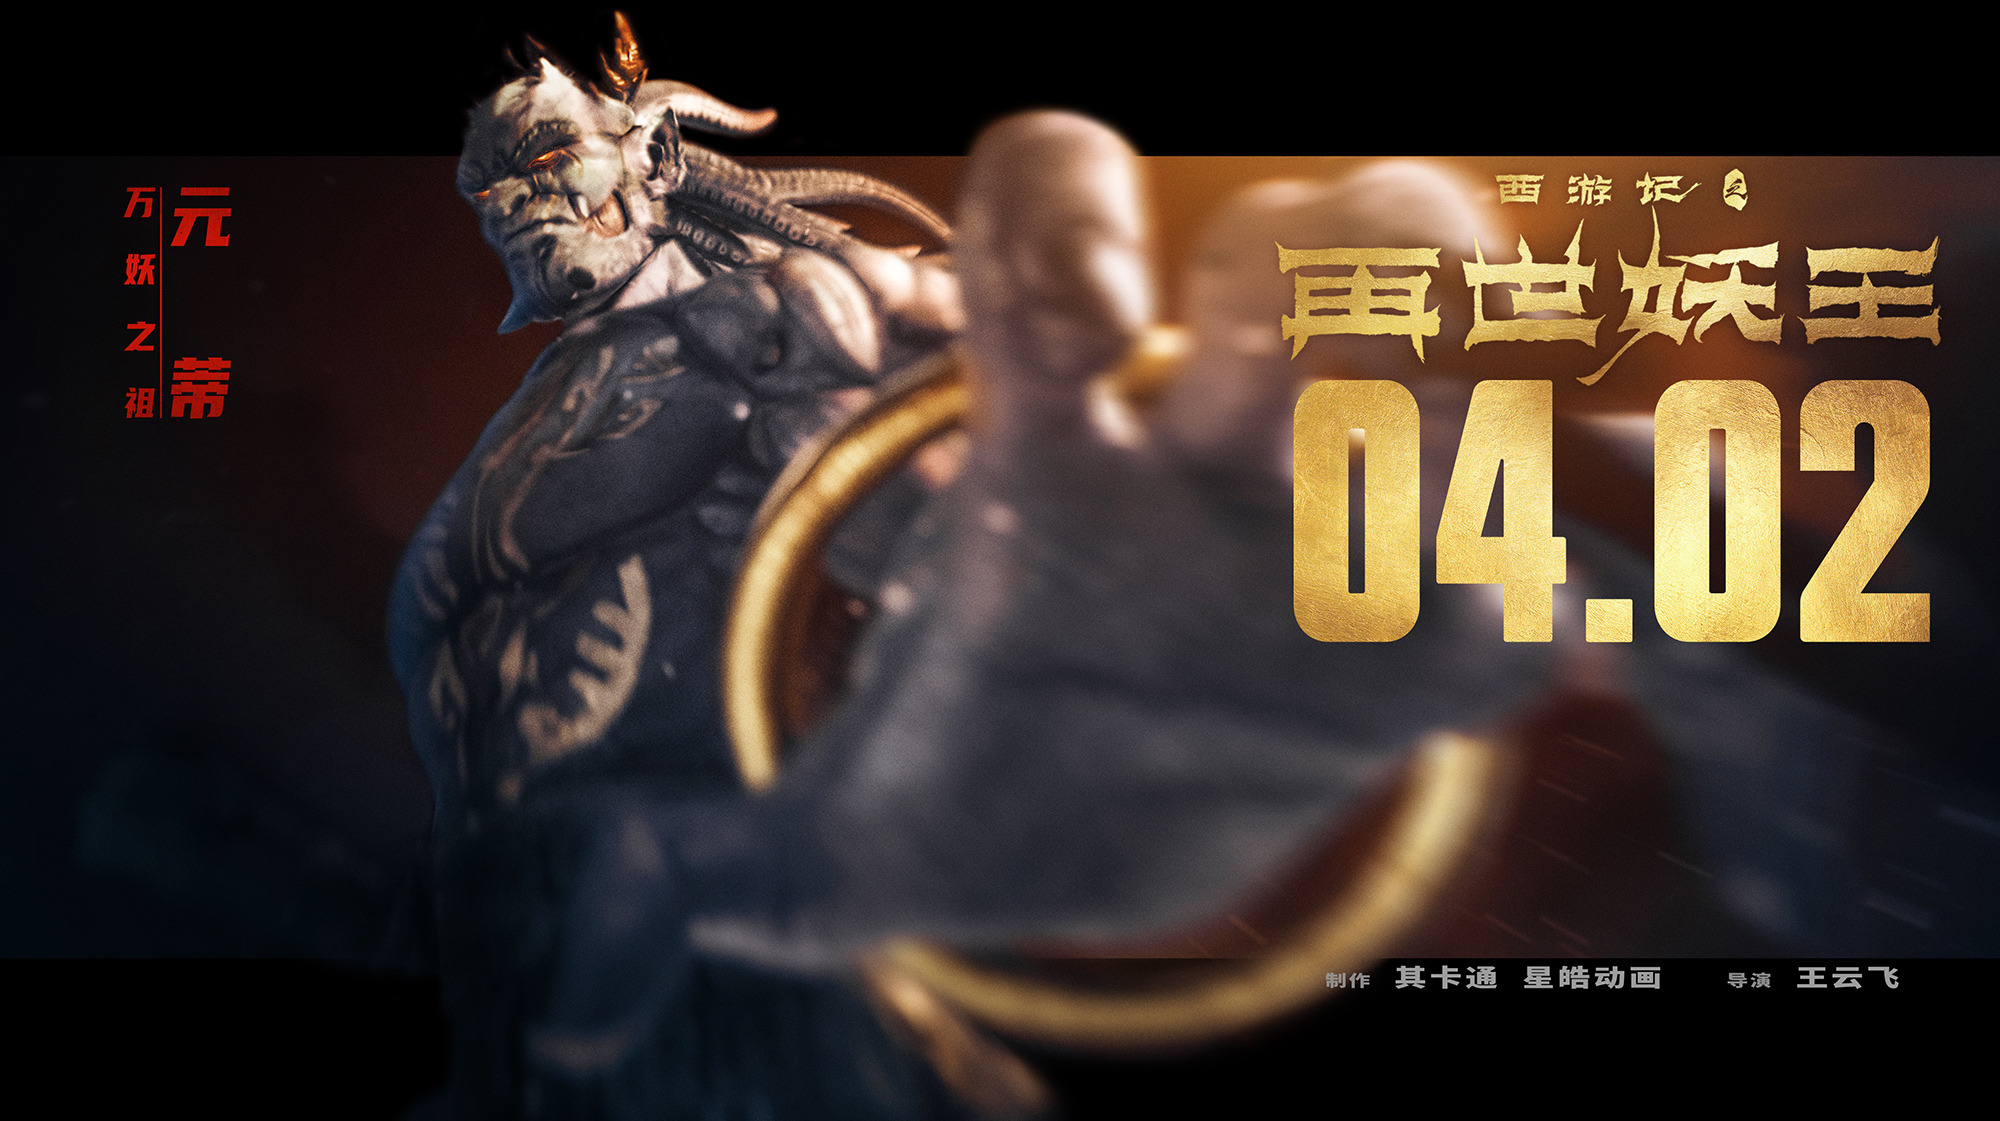 Mega Sized Movie Poster Image for Xi You Ji Zhi Zai Shi Yao Wang (#12 of 21)